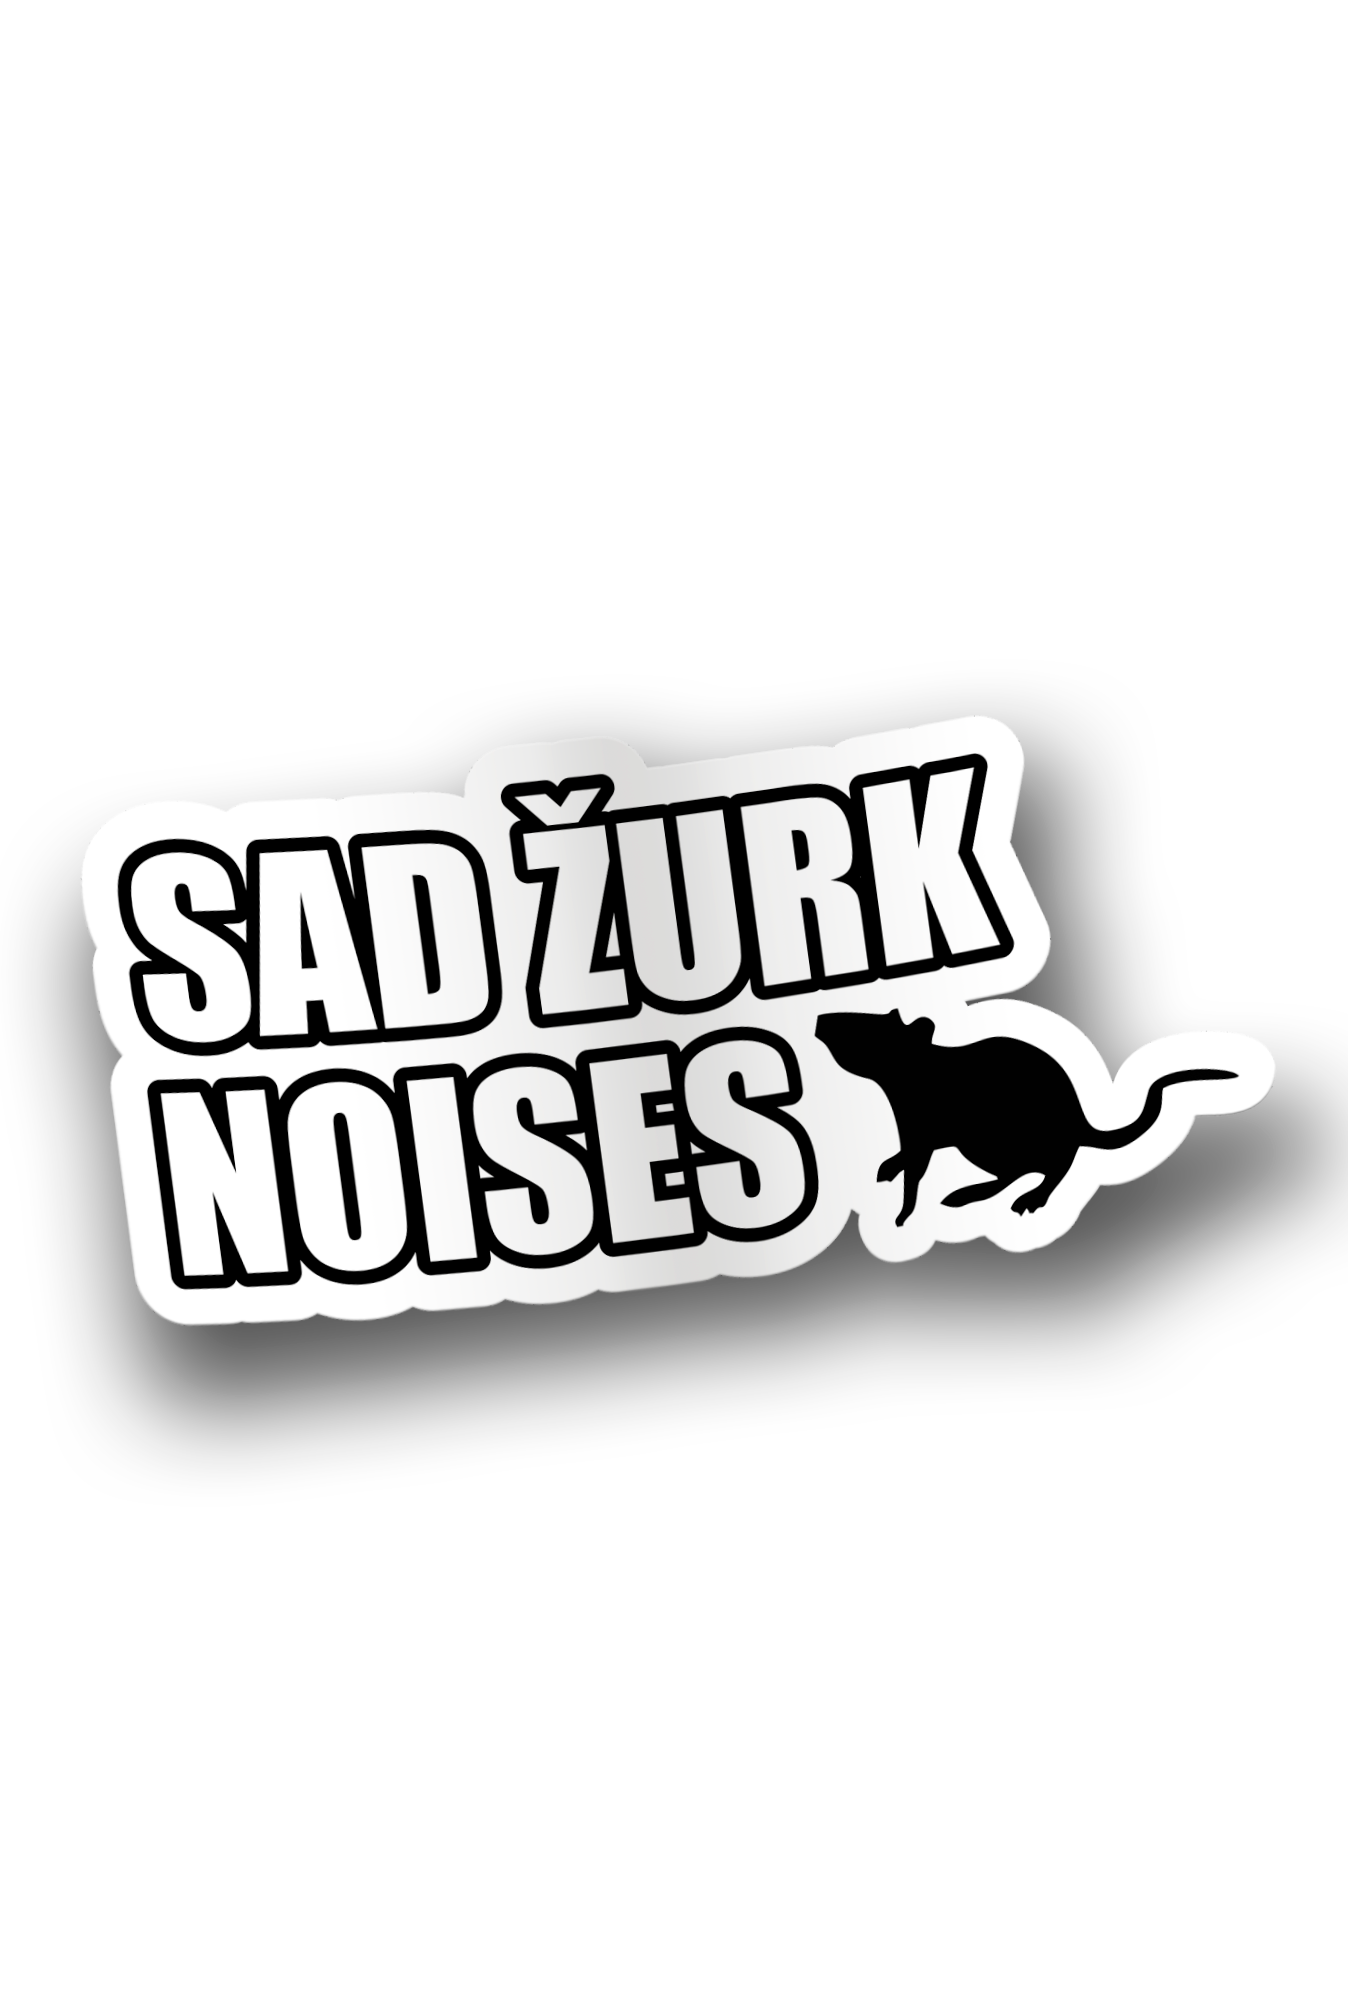 ''Sad žurk noises'' Vinyl Sticker